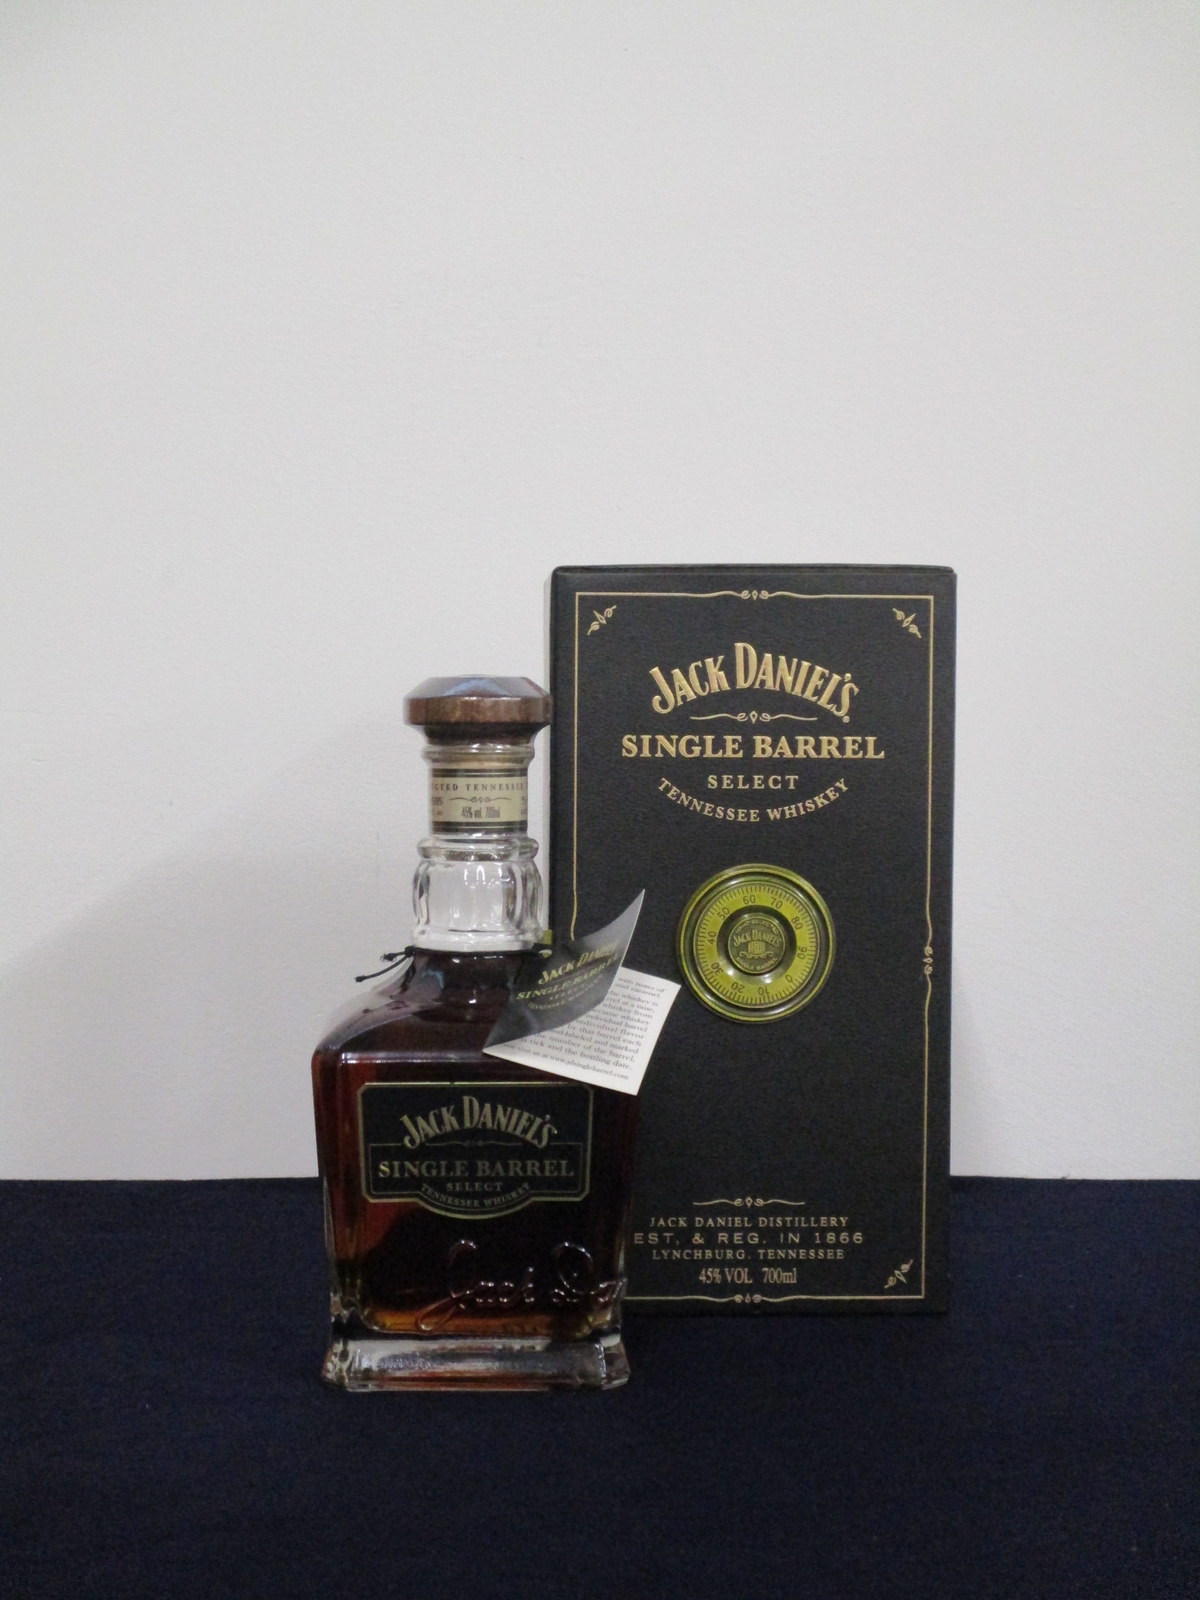 1 70-cl bt Jack Daniel's Single Barrel Whisky oc - Limited Edition 'Safe' presentation Case - Image 2 of 2